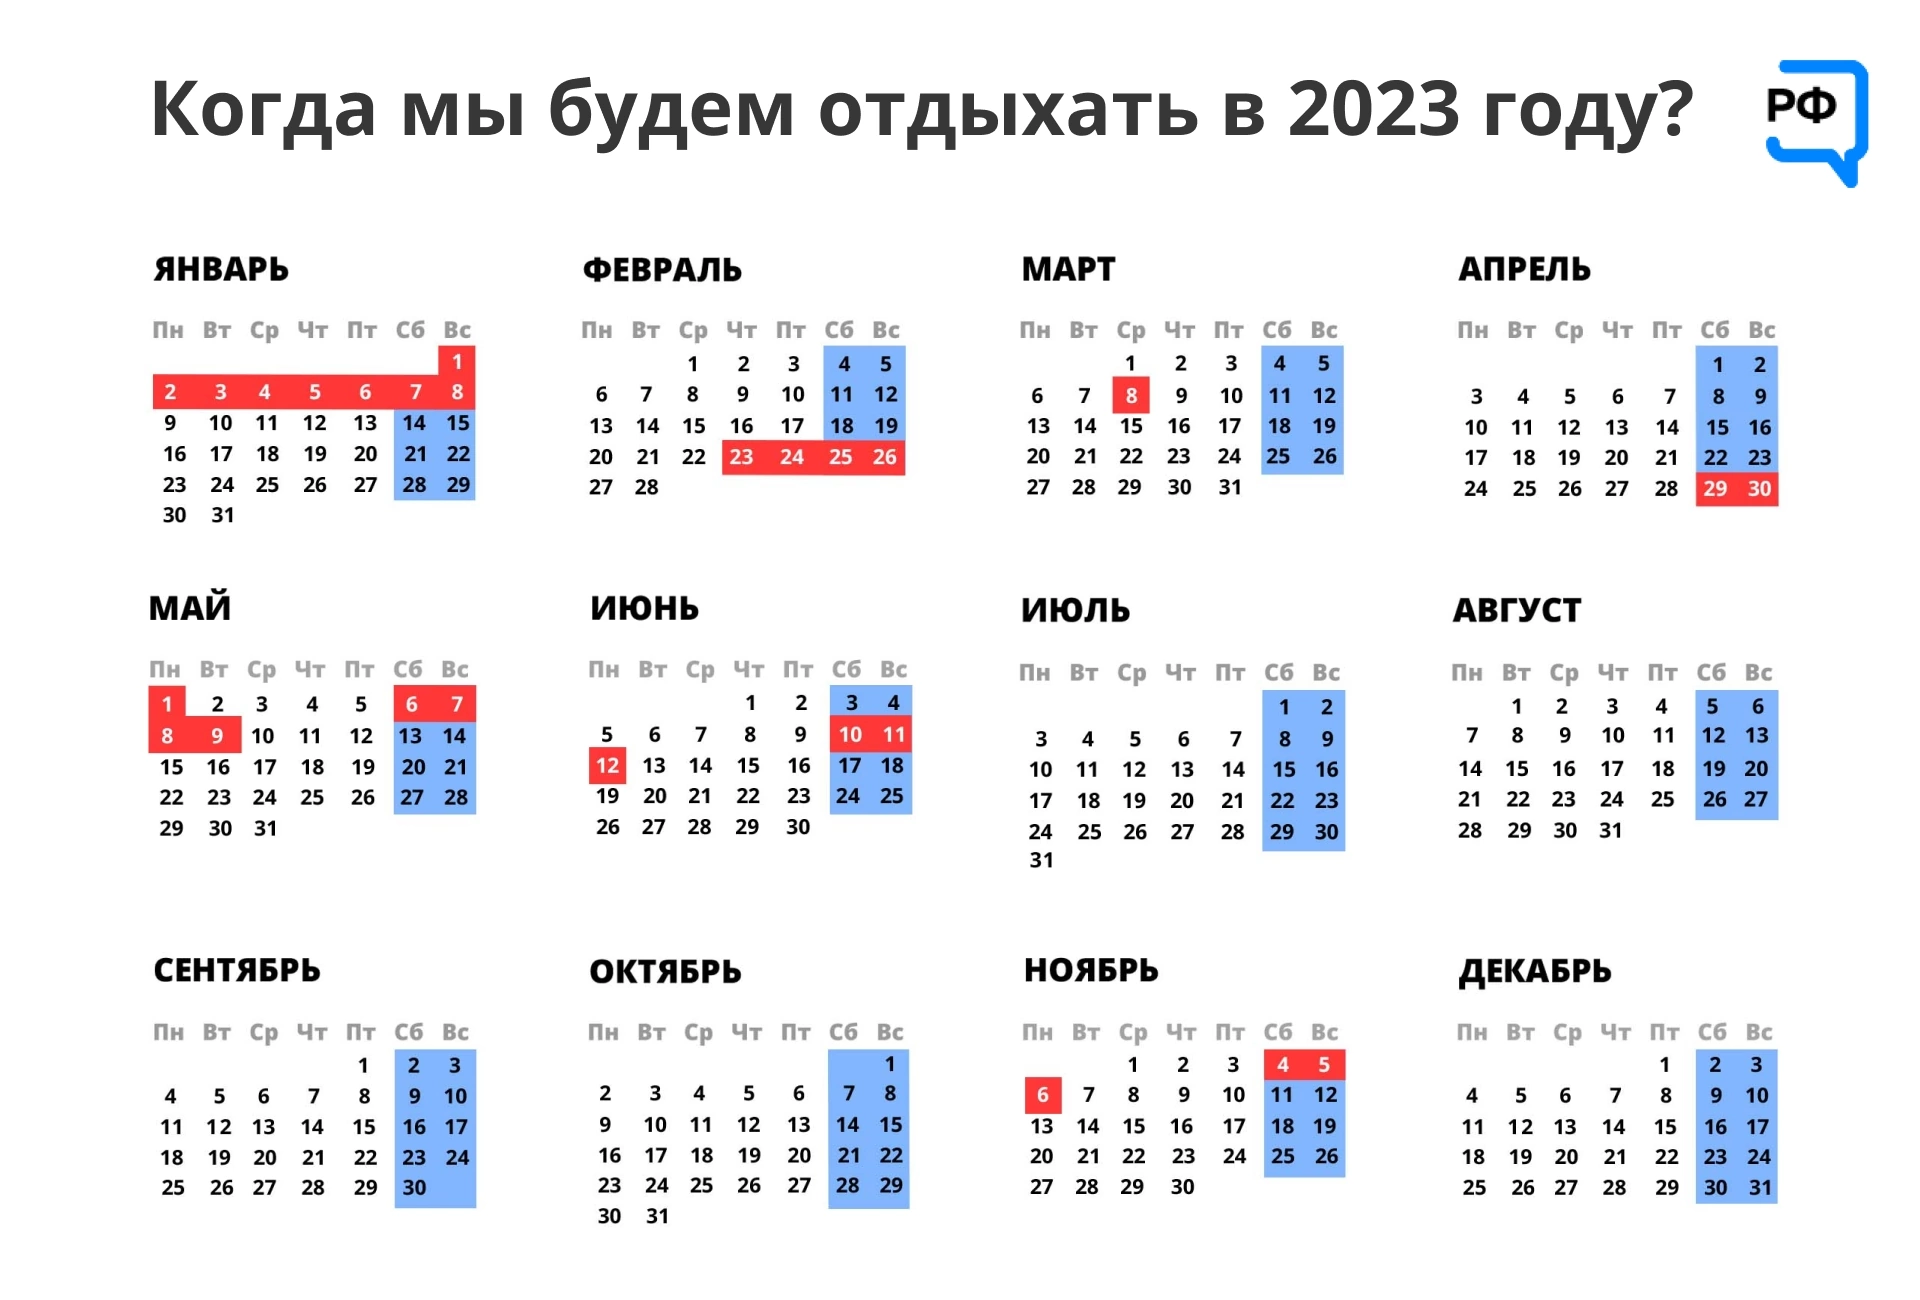 31 декабря включительно. Выходные и праздничные дни в феврале 2023 года в России. Календарь на 2023 год с праздниками. Календарные праздники на 2023 год. Календарь на 2023 год с праздниками и выходными.